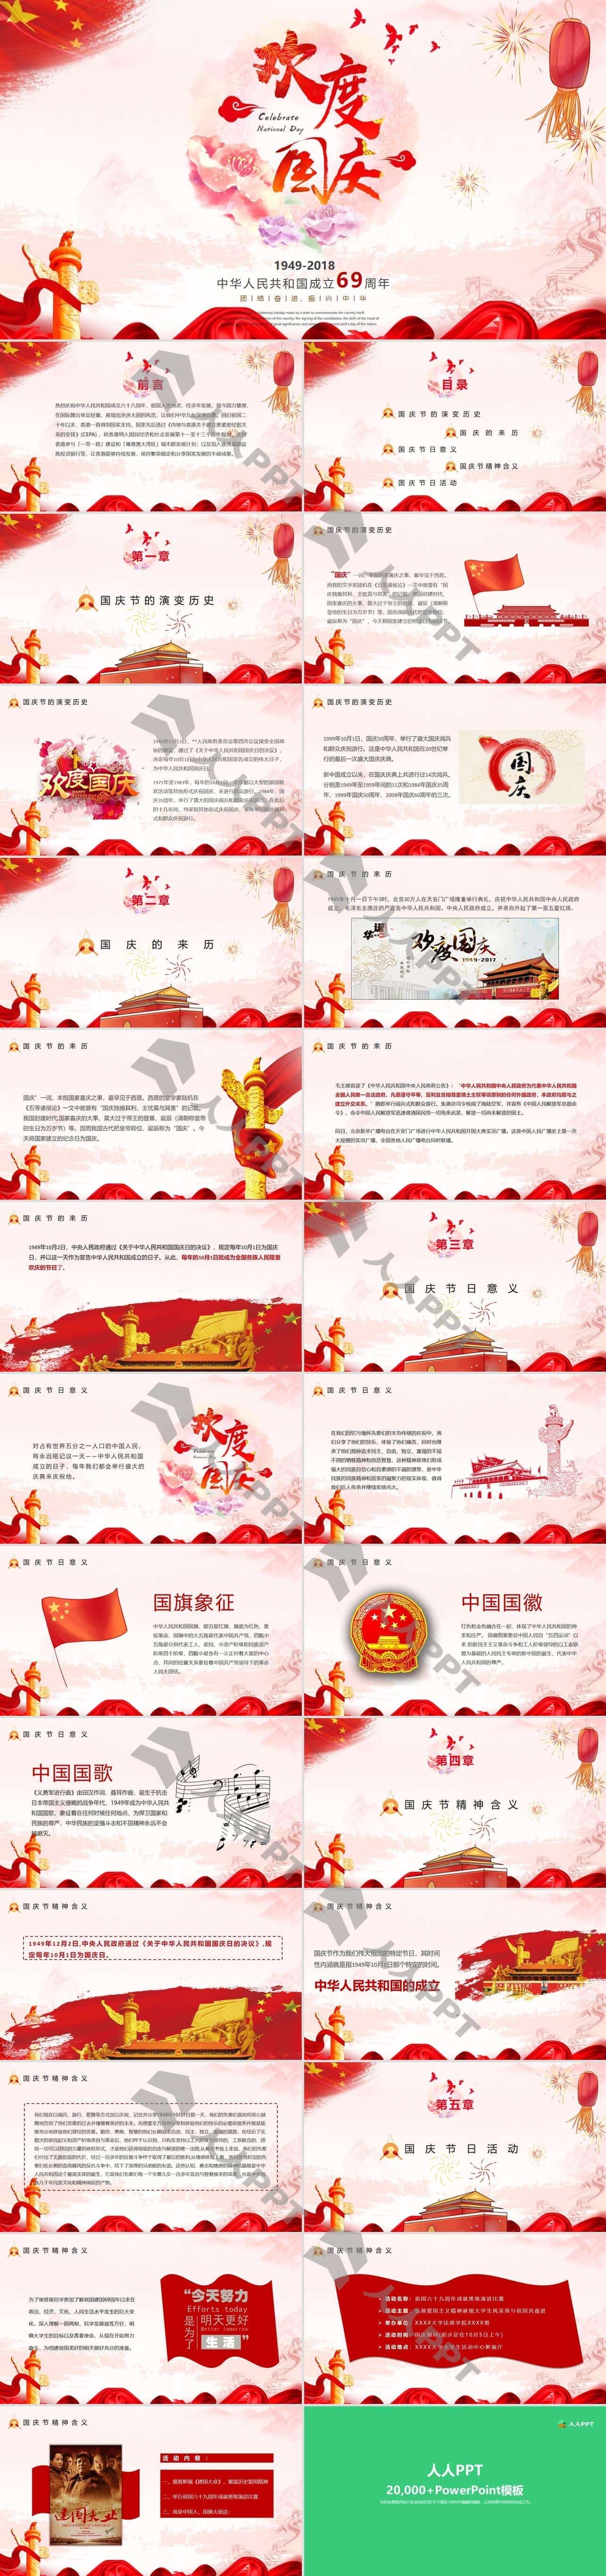 欢度国庆喜庆中国红国庆节PPT模板长图